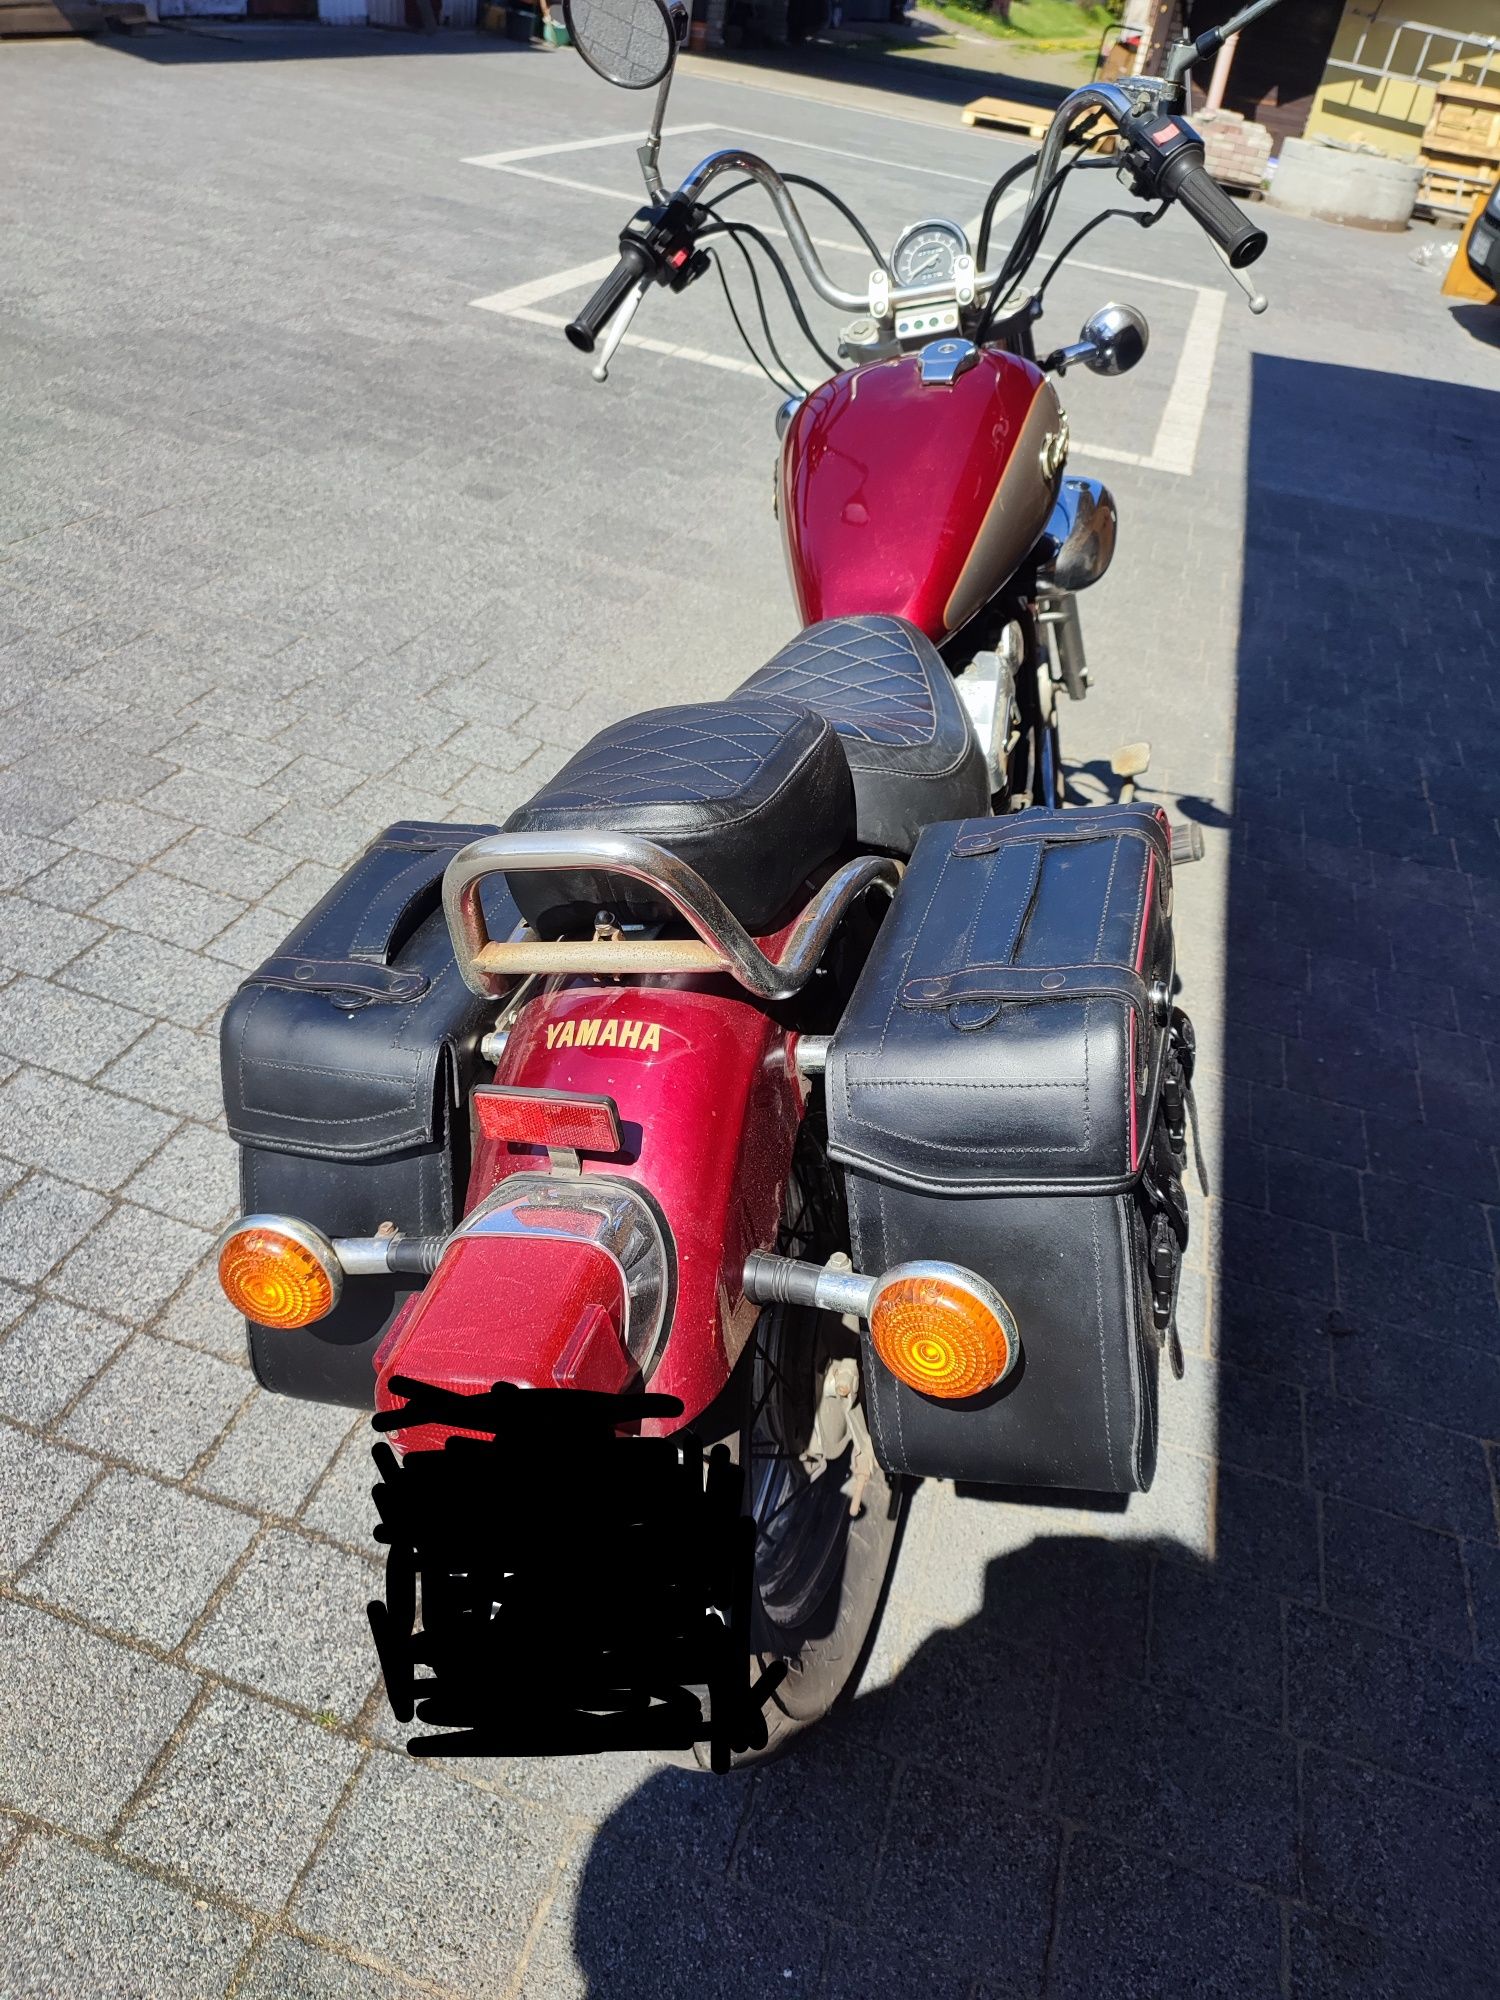 Motocykl Yamaha Virago 125